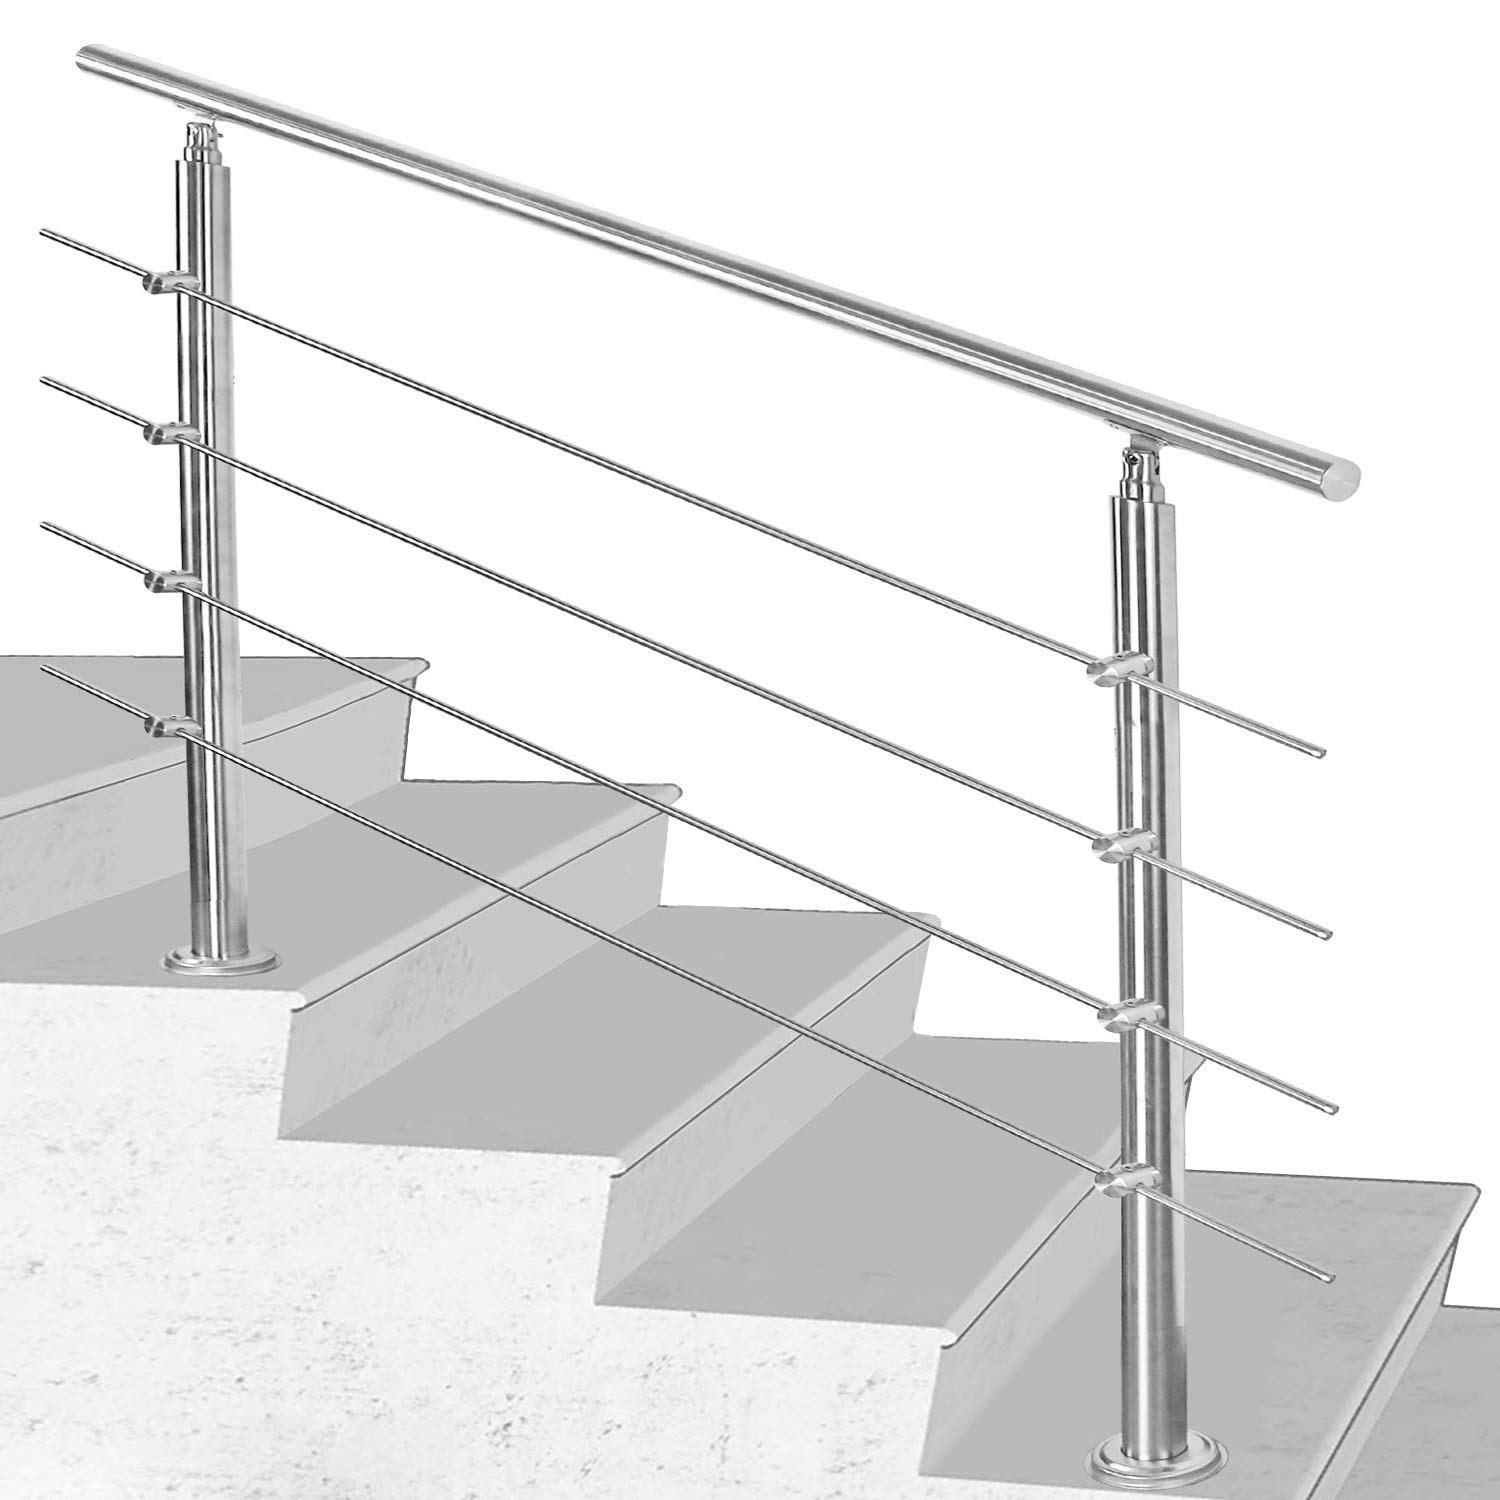 SWANEW Edelstahl Handlauf Geländer Treppengeländer 160 cm mit 4 Querstreben Montagematerial Wandhandlauf Wandhalterung Innen & Außen